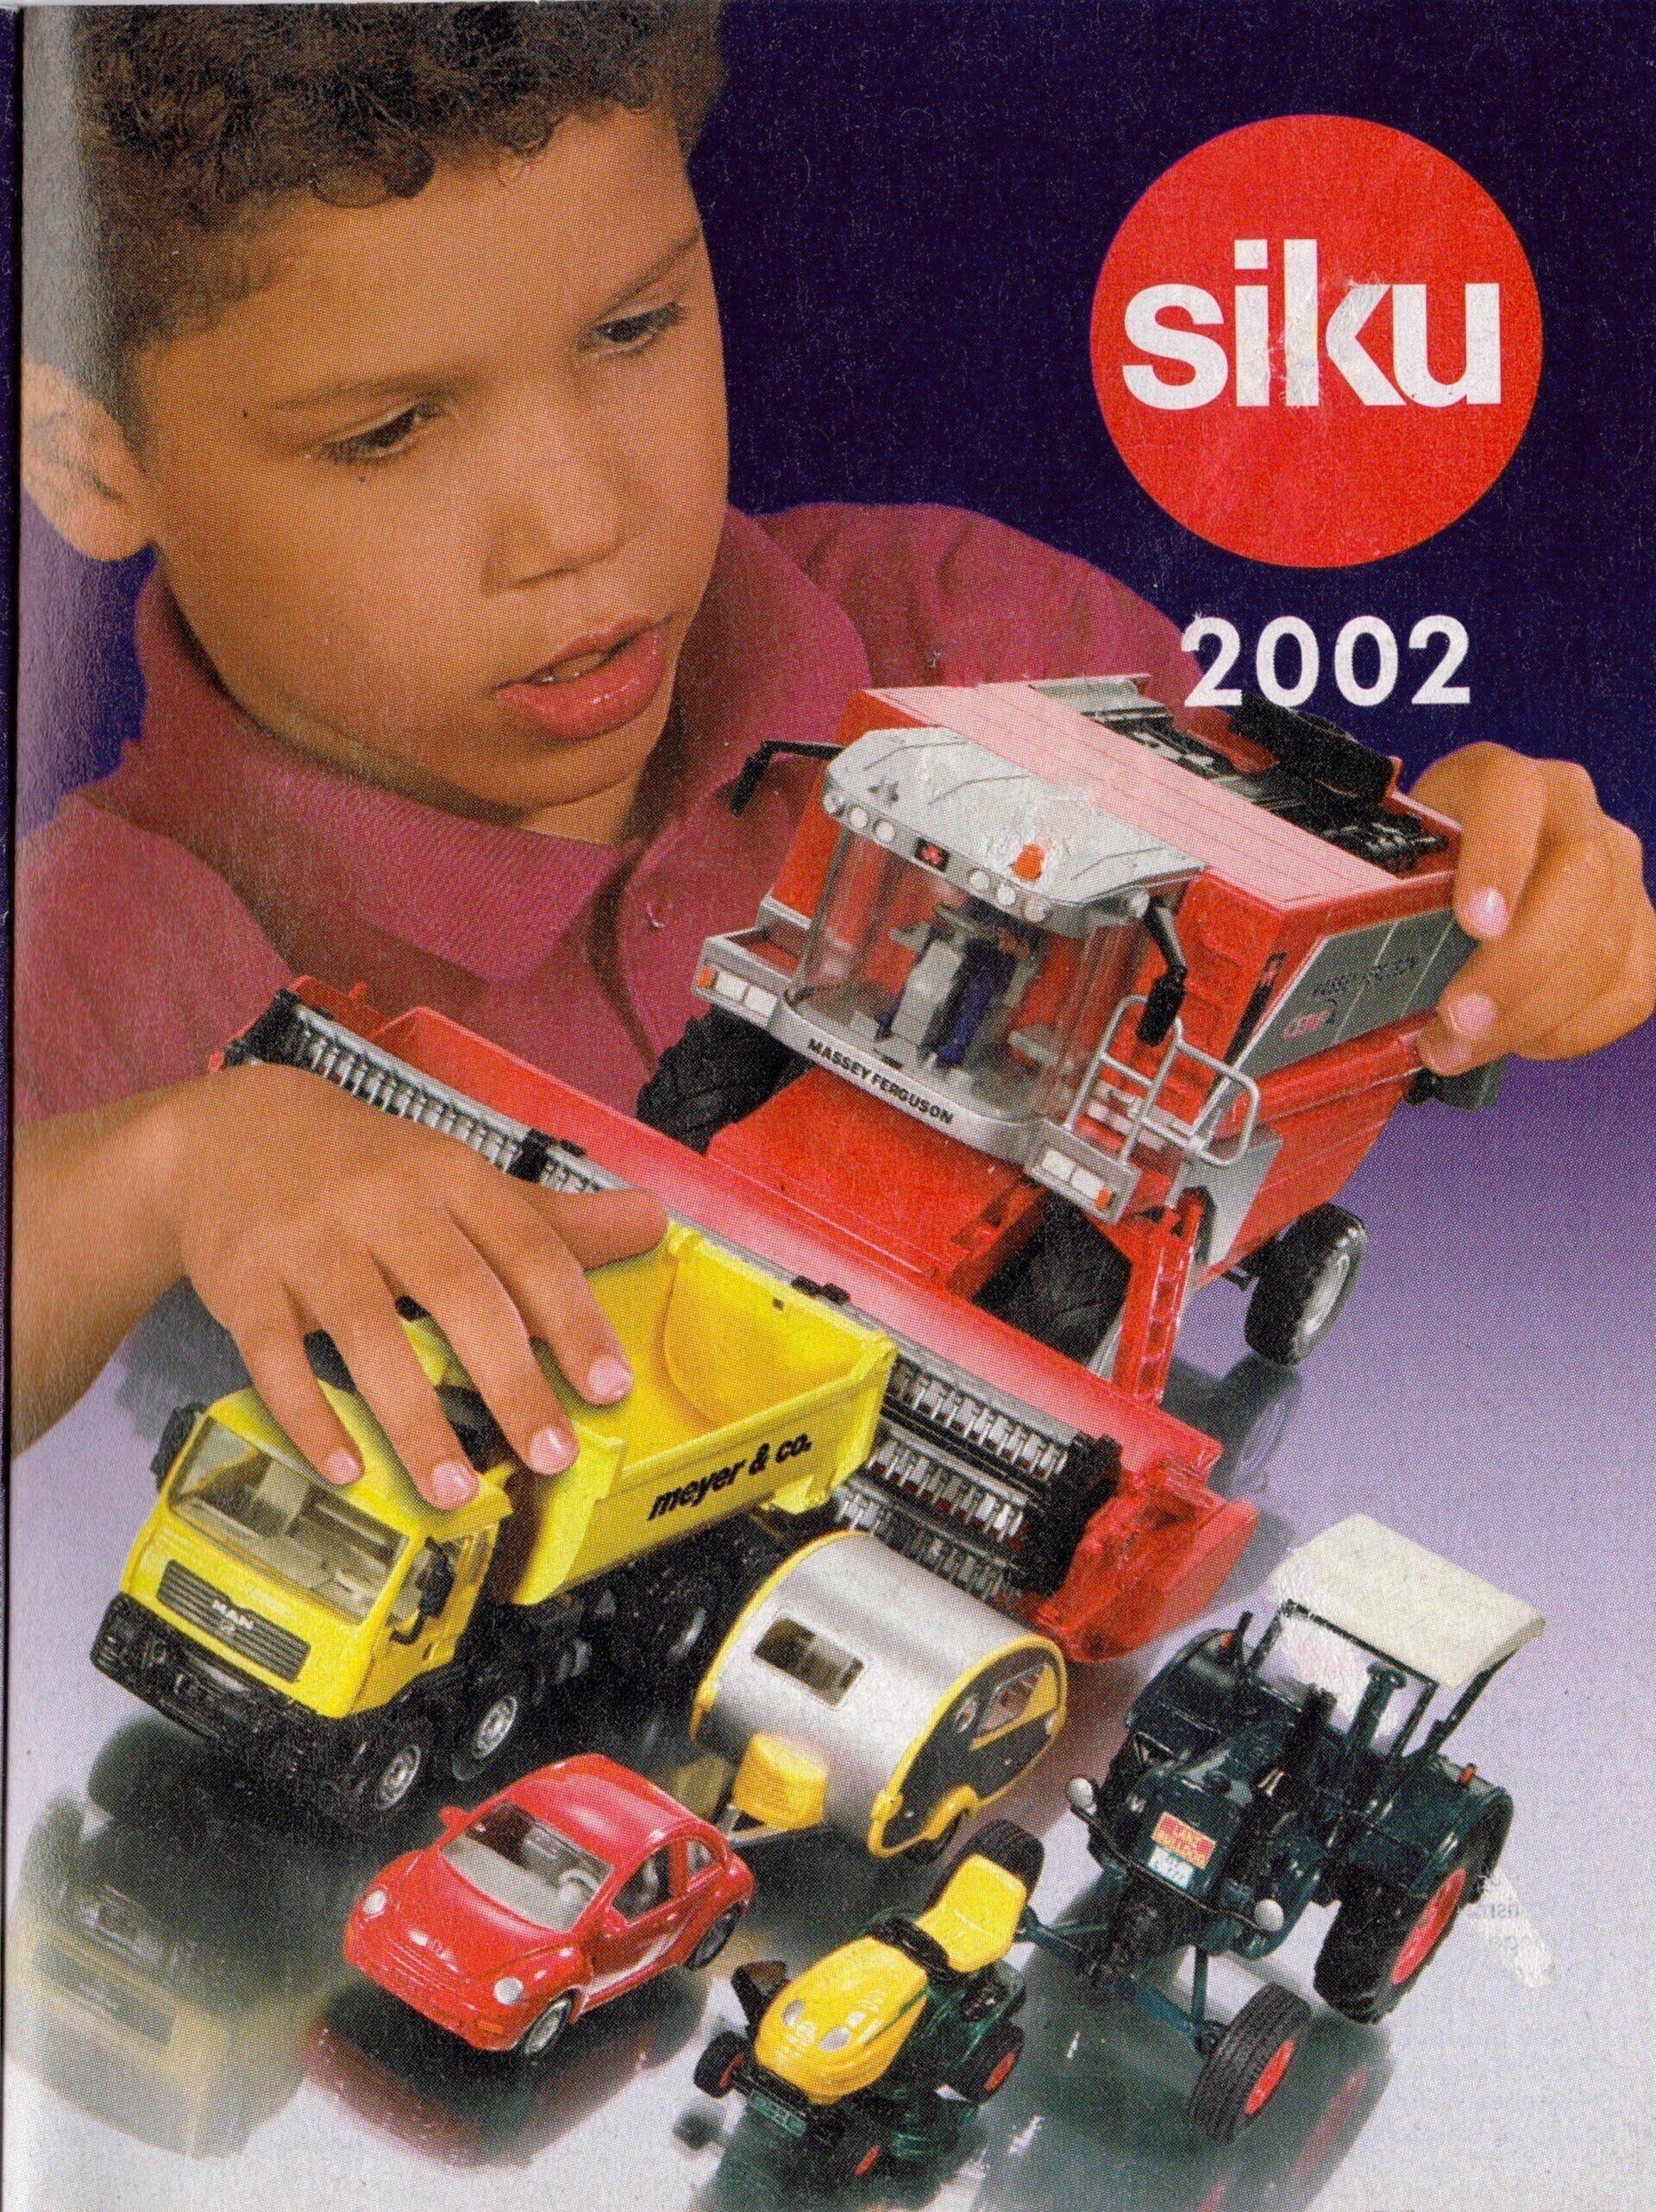 Siku catalogue 2002